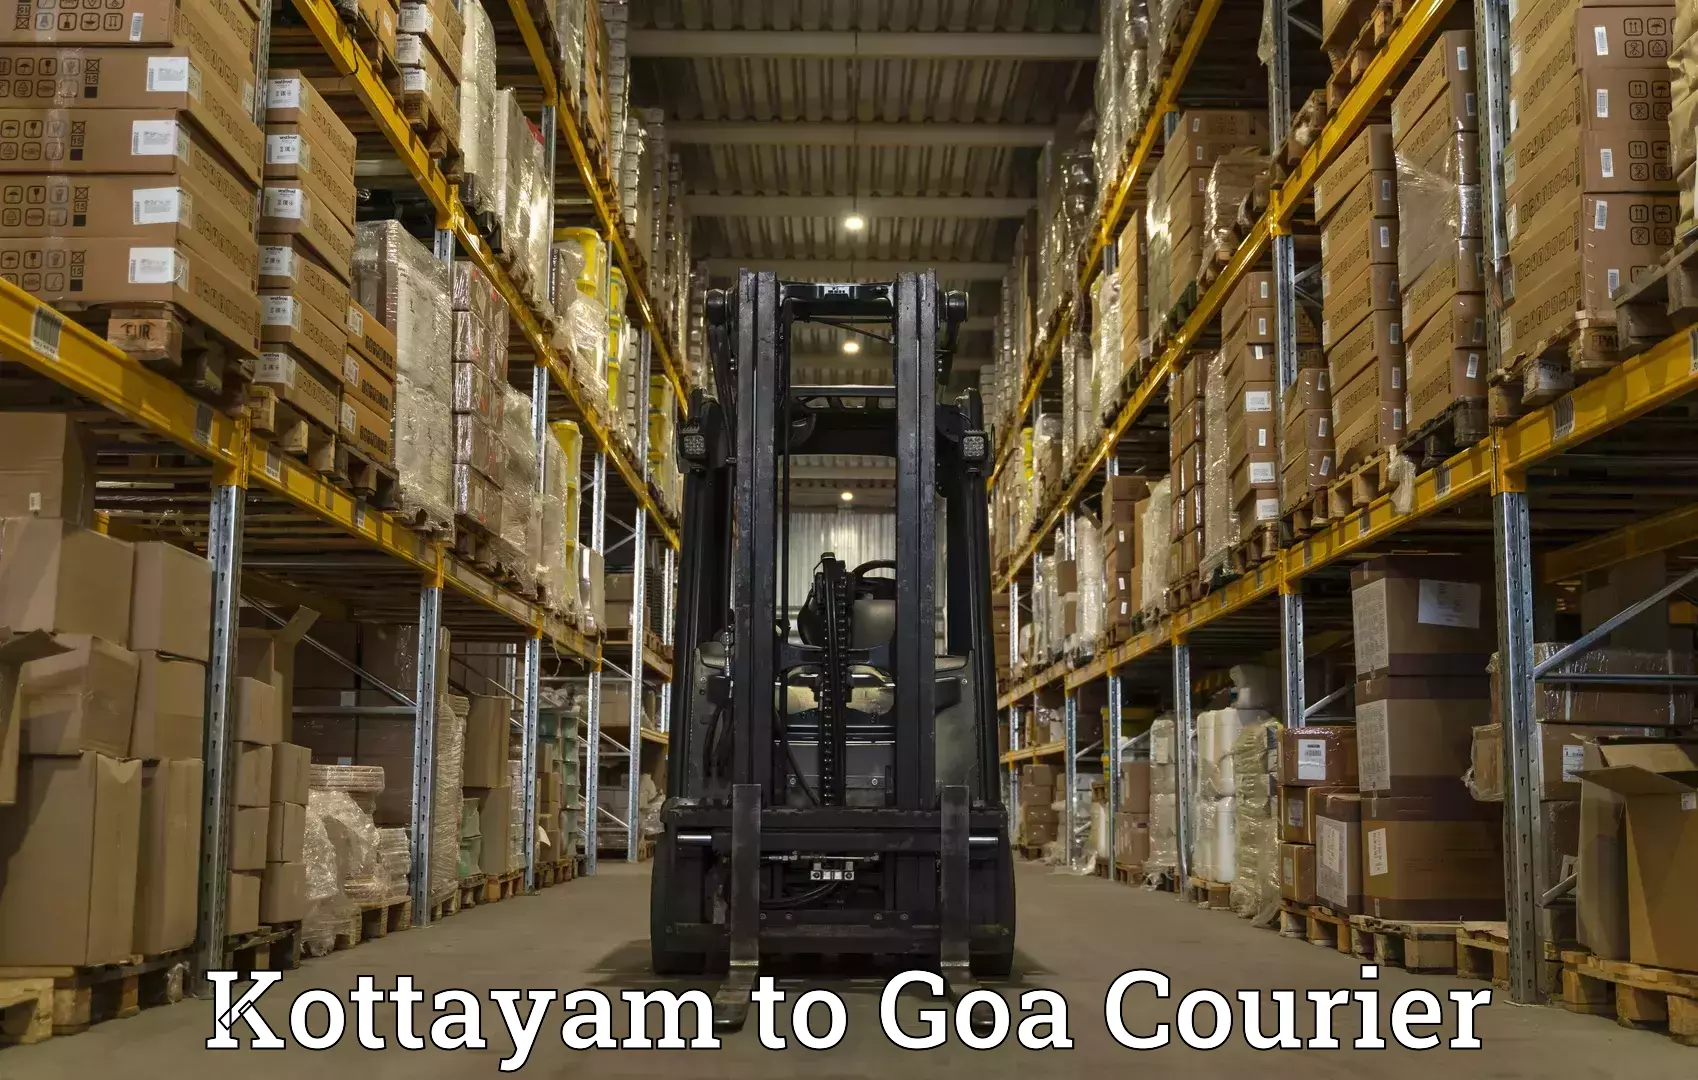 Global shipping networks Kottayam to Mormugao Port